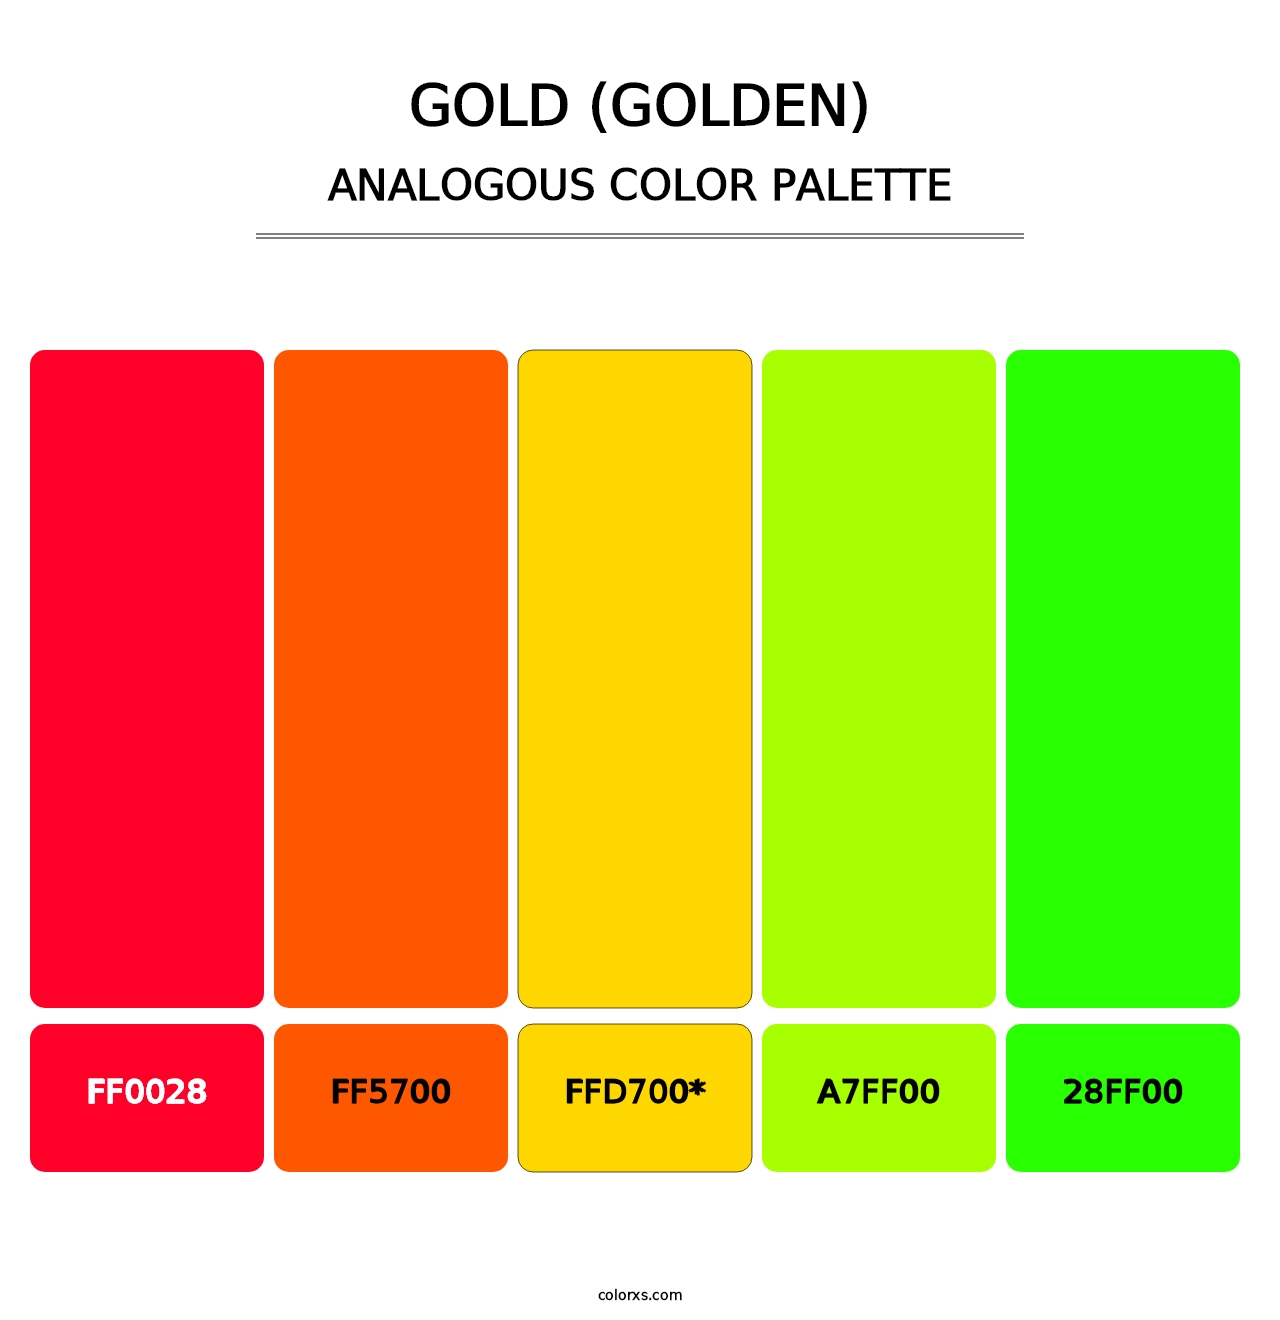 Gold (Golden) - Analogous Color Palette